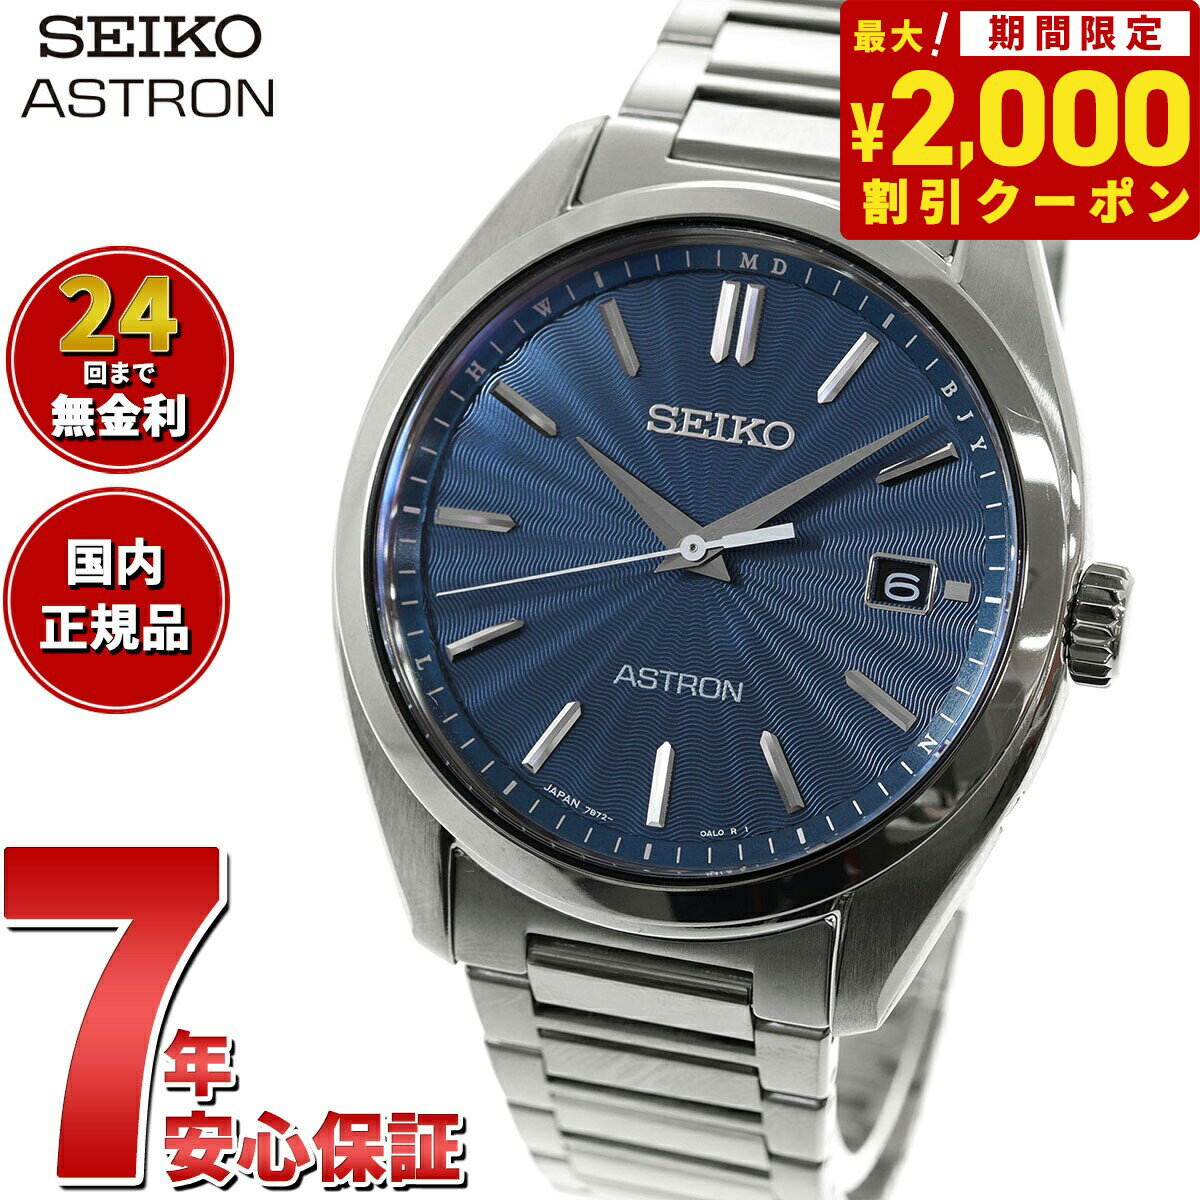 セイコー アストロン SEIKO ASTRON ソーラー電波ライン 電波時計 腕時計 メンズ SBXY031